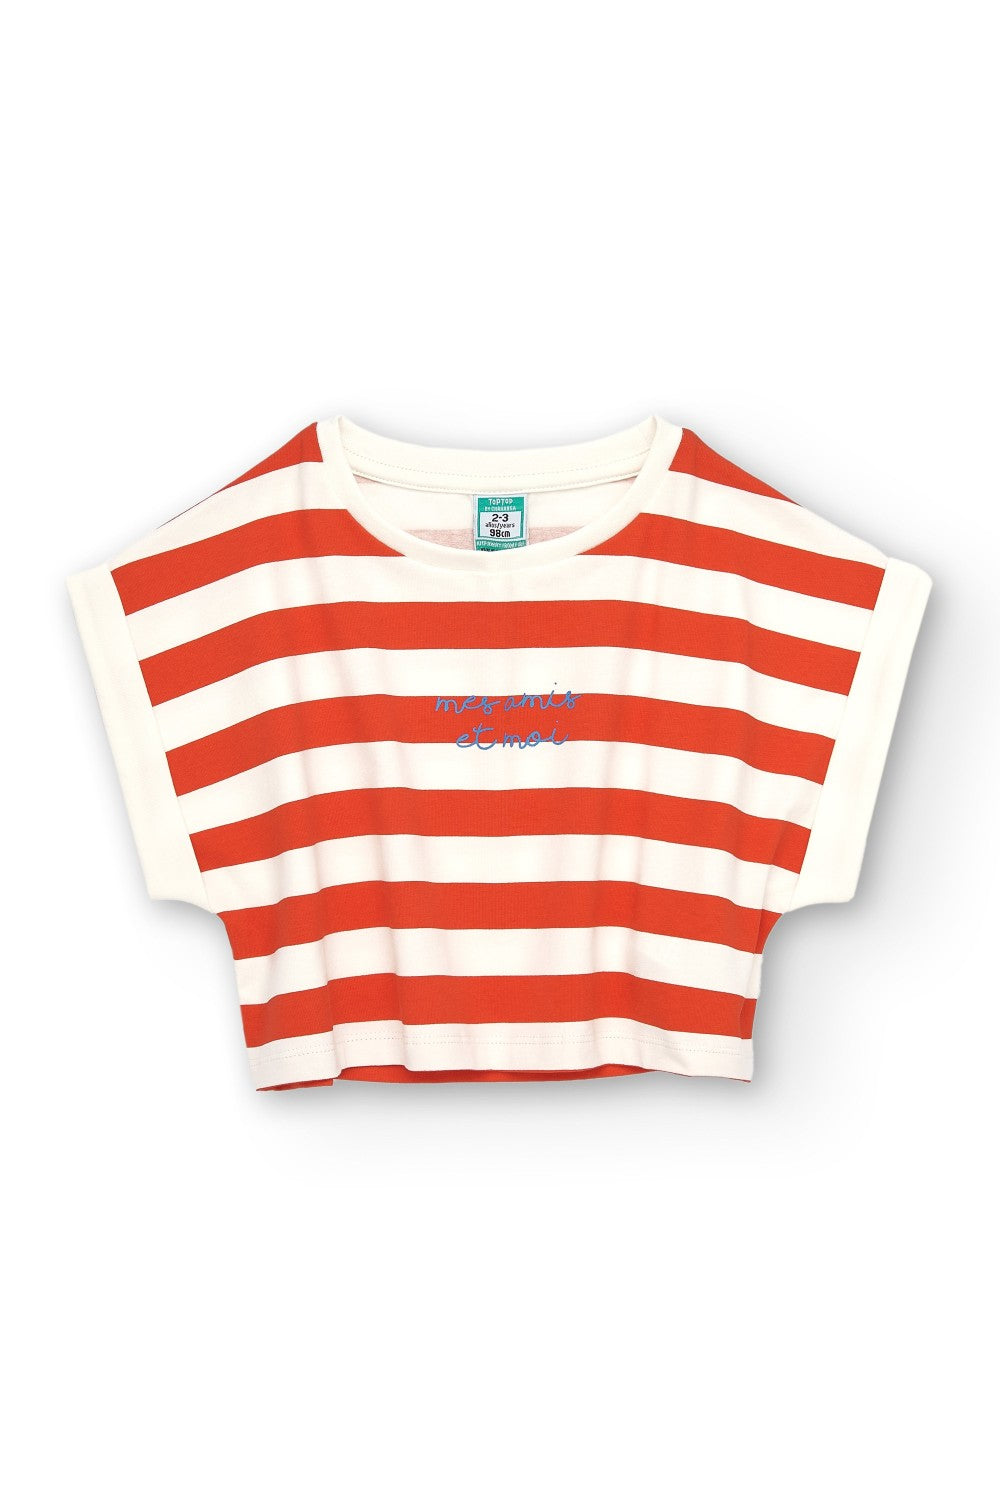 Camiseta de niña de rayas VERANO/Outlet